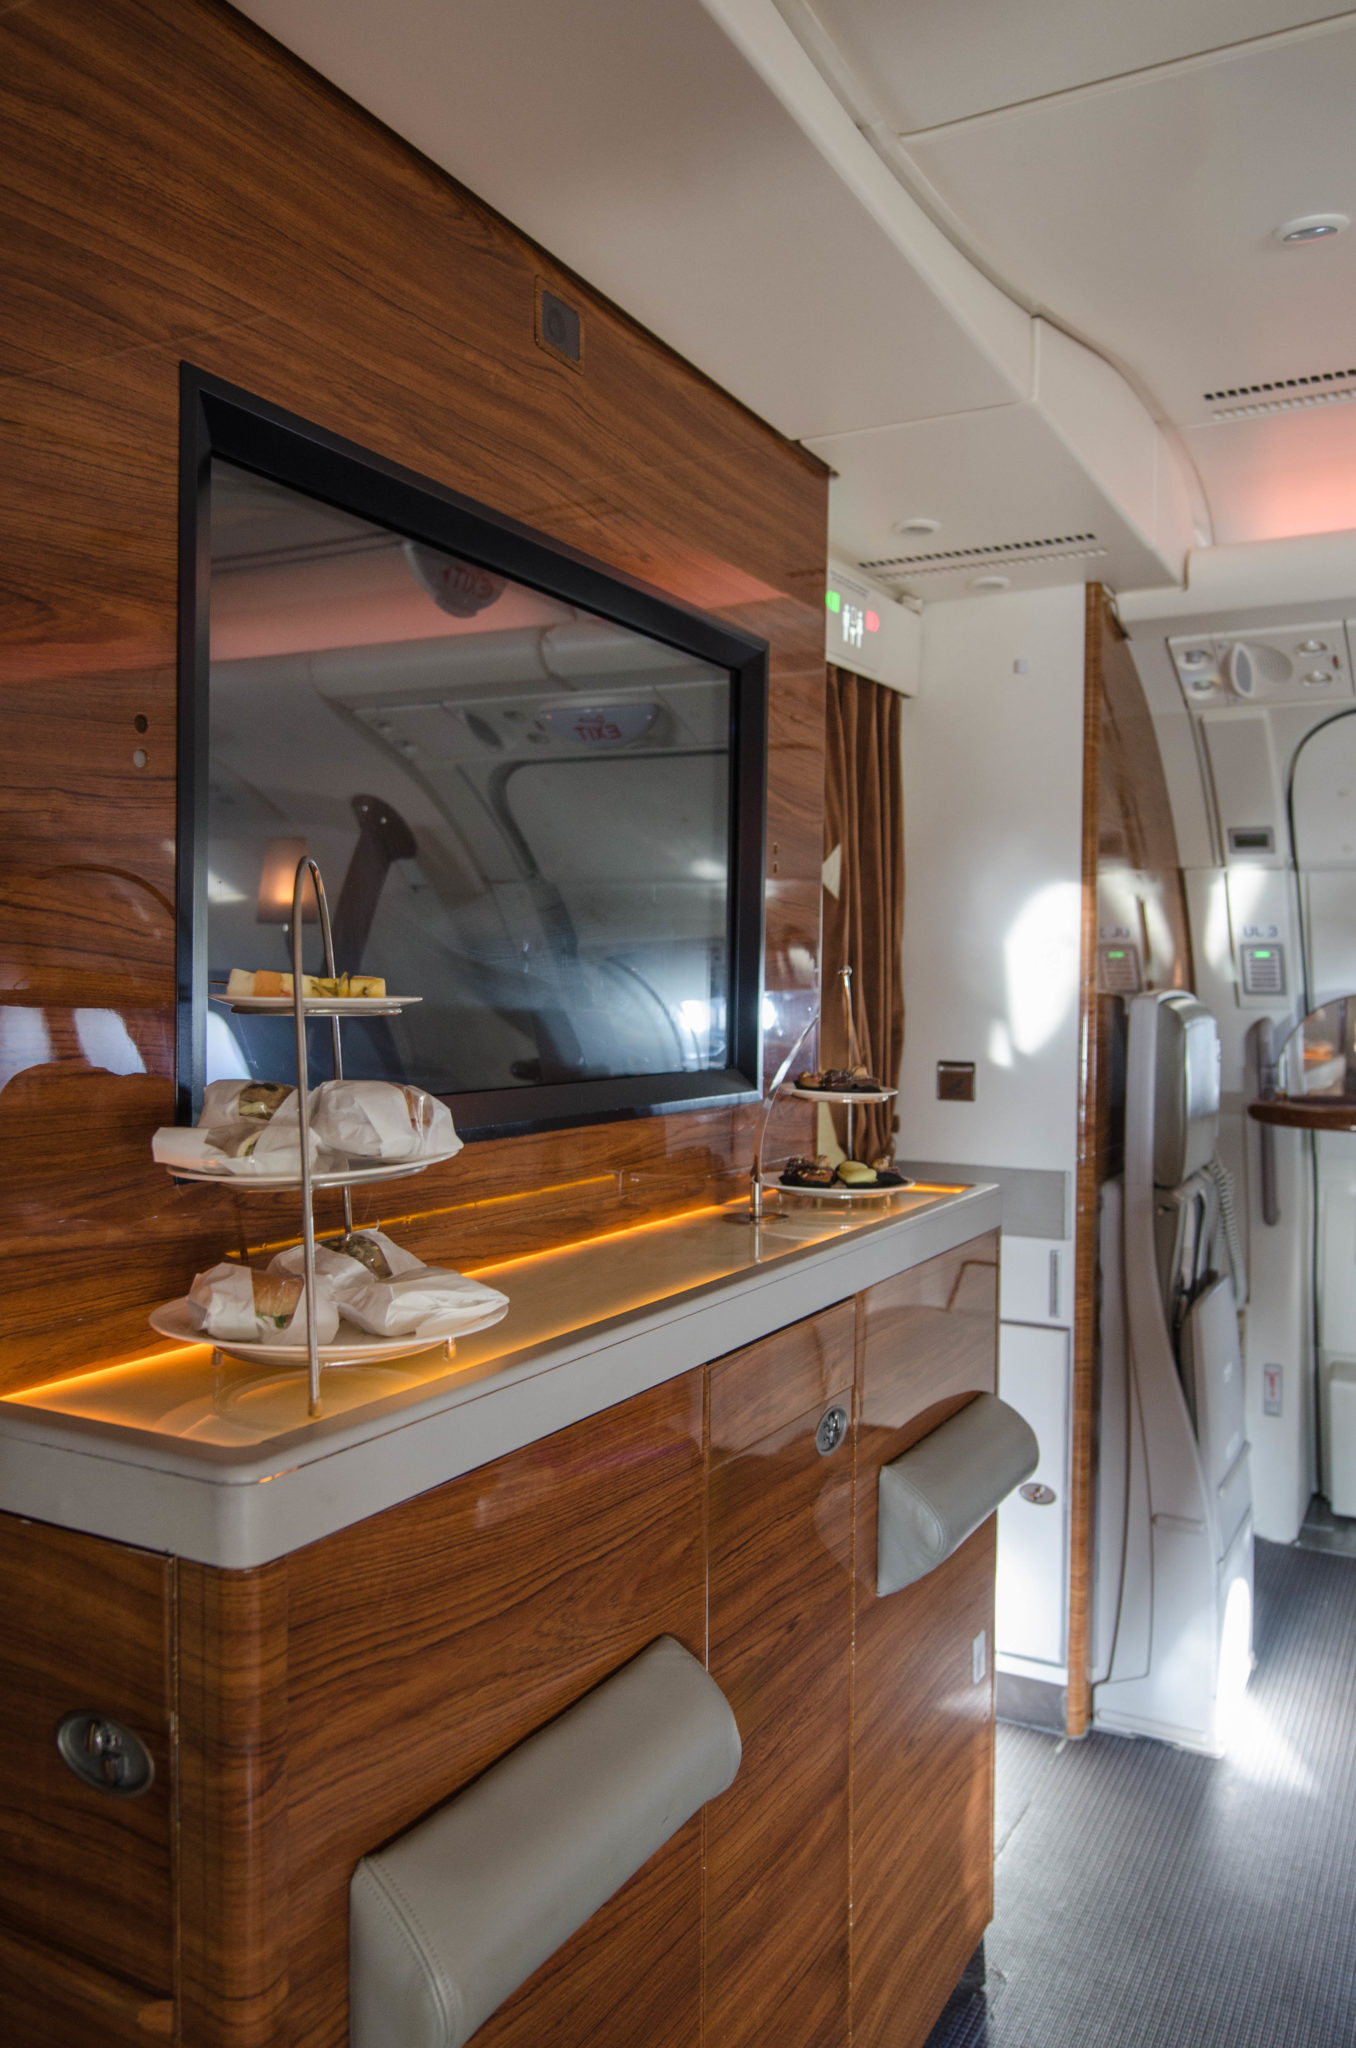 Emirates Business Class im A380: Auch Snacks werden in der Bar an Bord gereicht